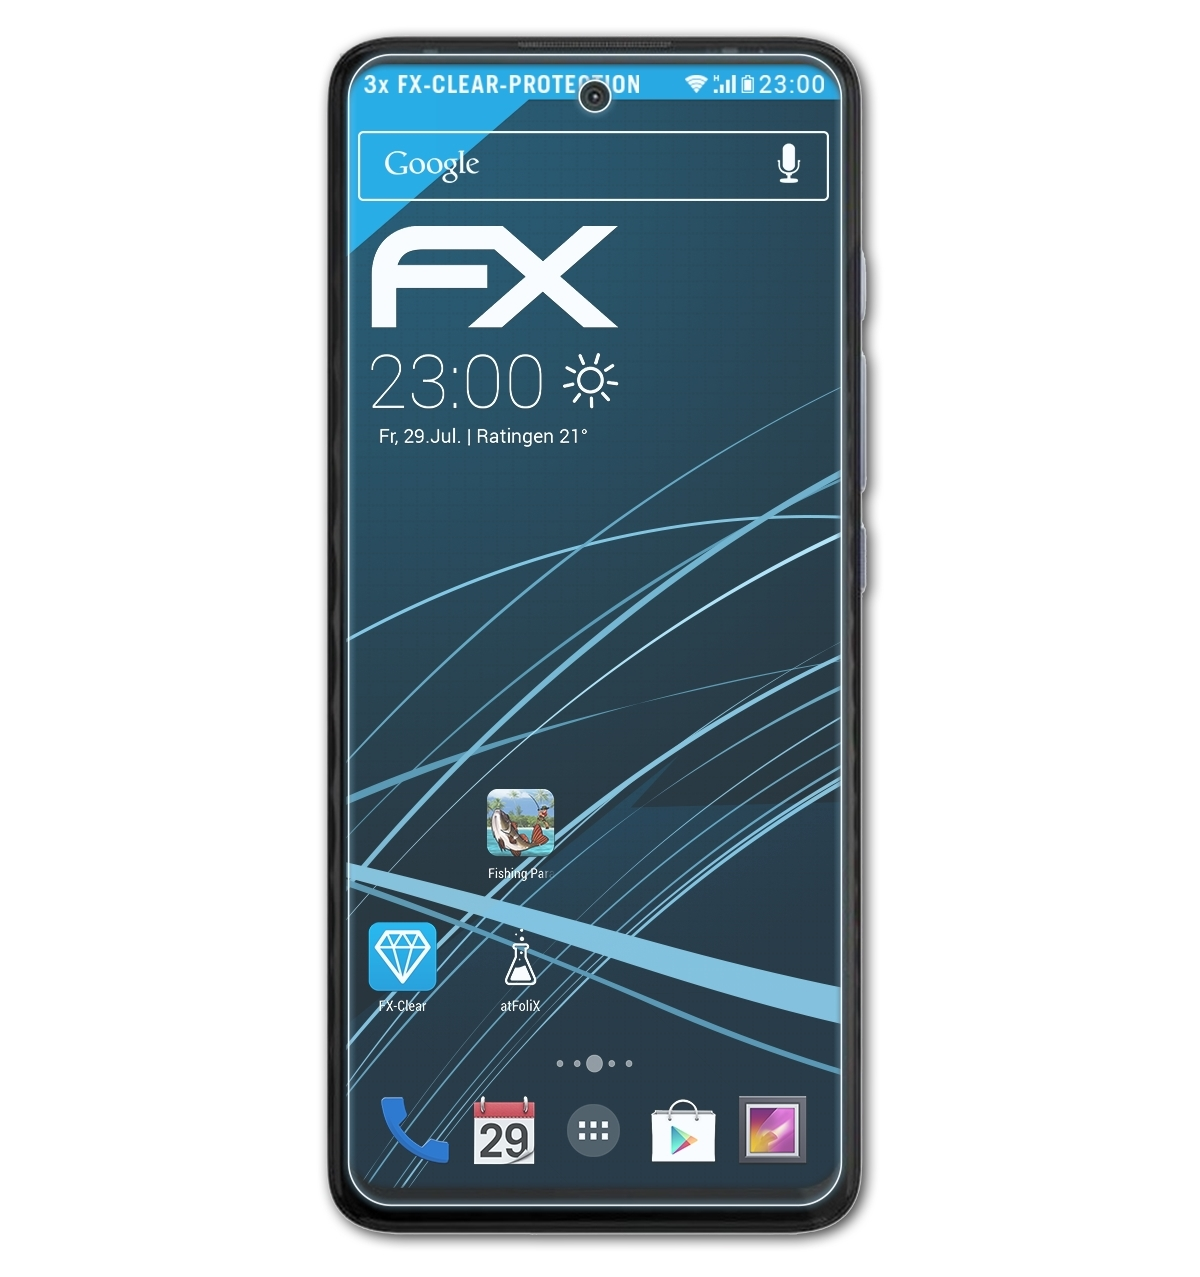 ATFOLIX 3x Motorola Displayschutz(für FX-Clear Moto Fusion) G40